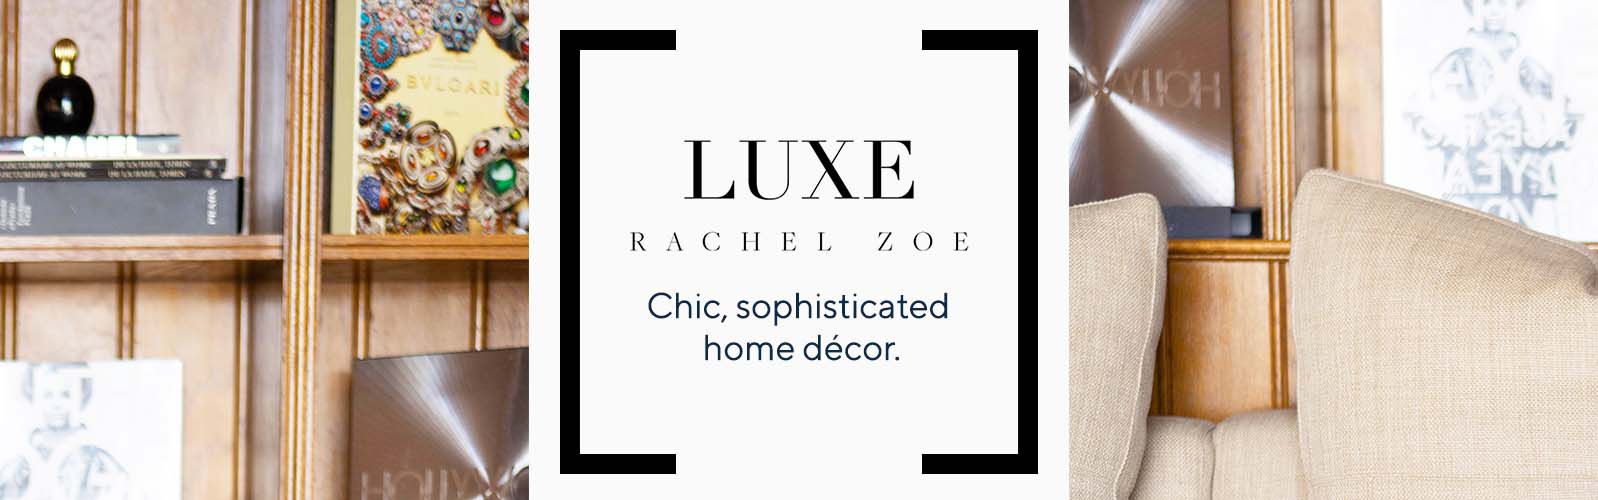 Rachel Zoe Home Decor Tips